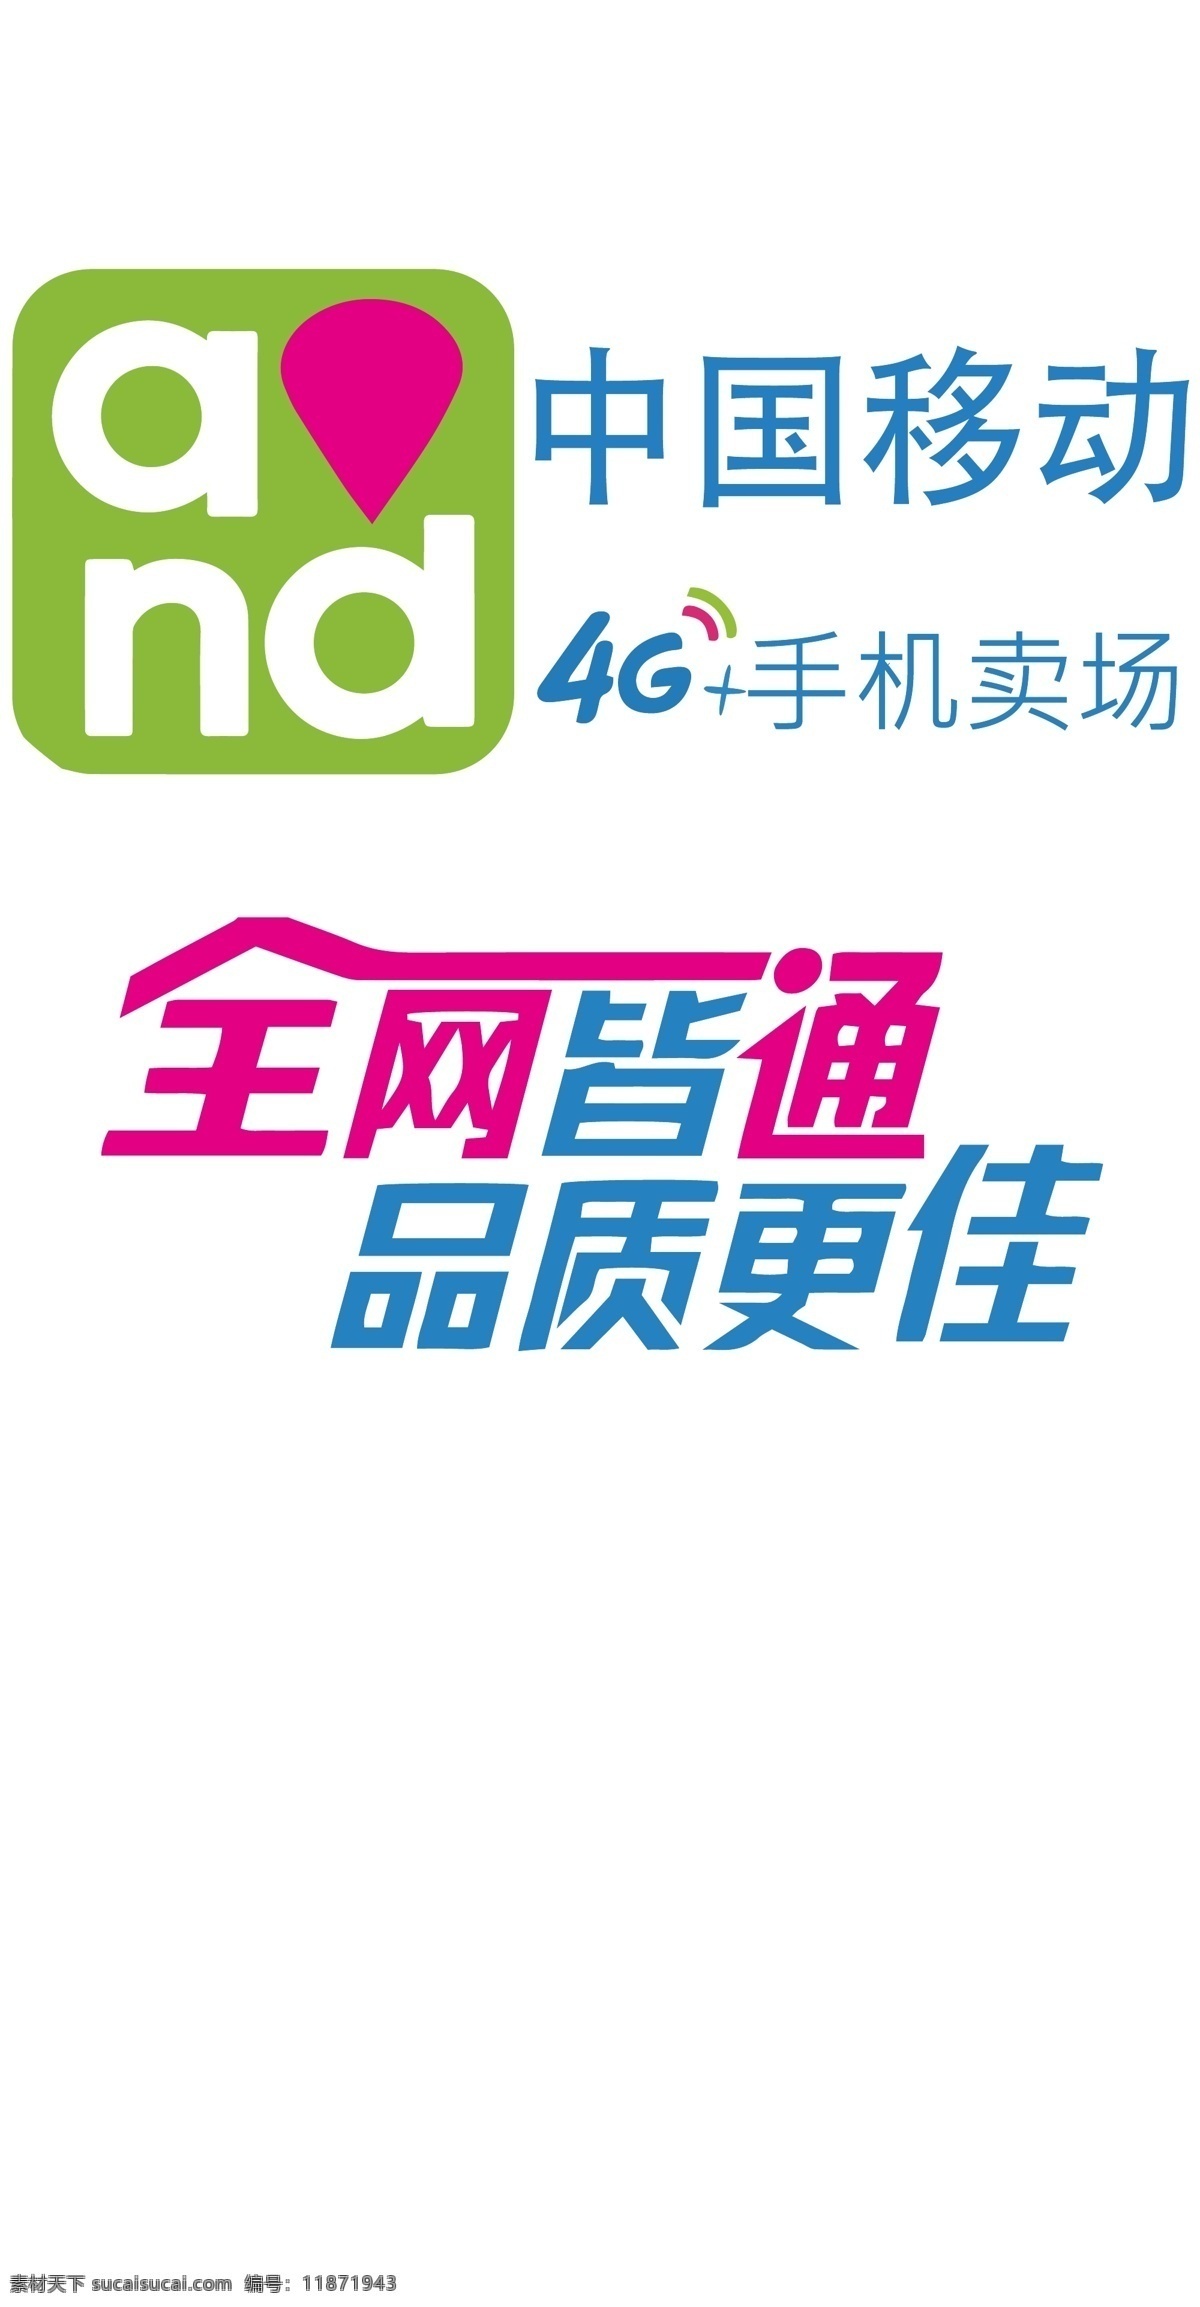 中国移动 宣传 图 4g 全网皆通 品质更佳 宣传图 标志图标 公共标识标志